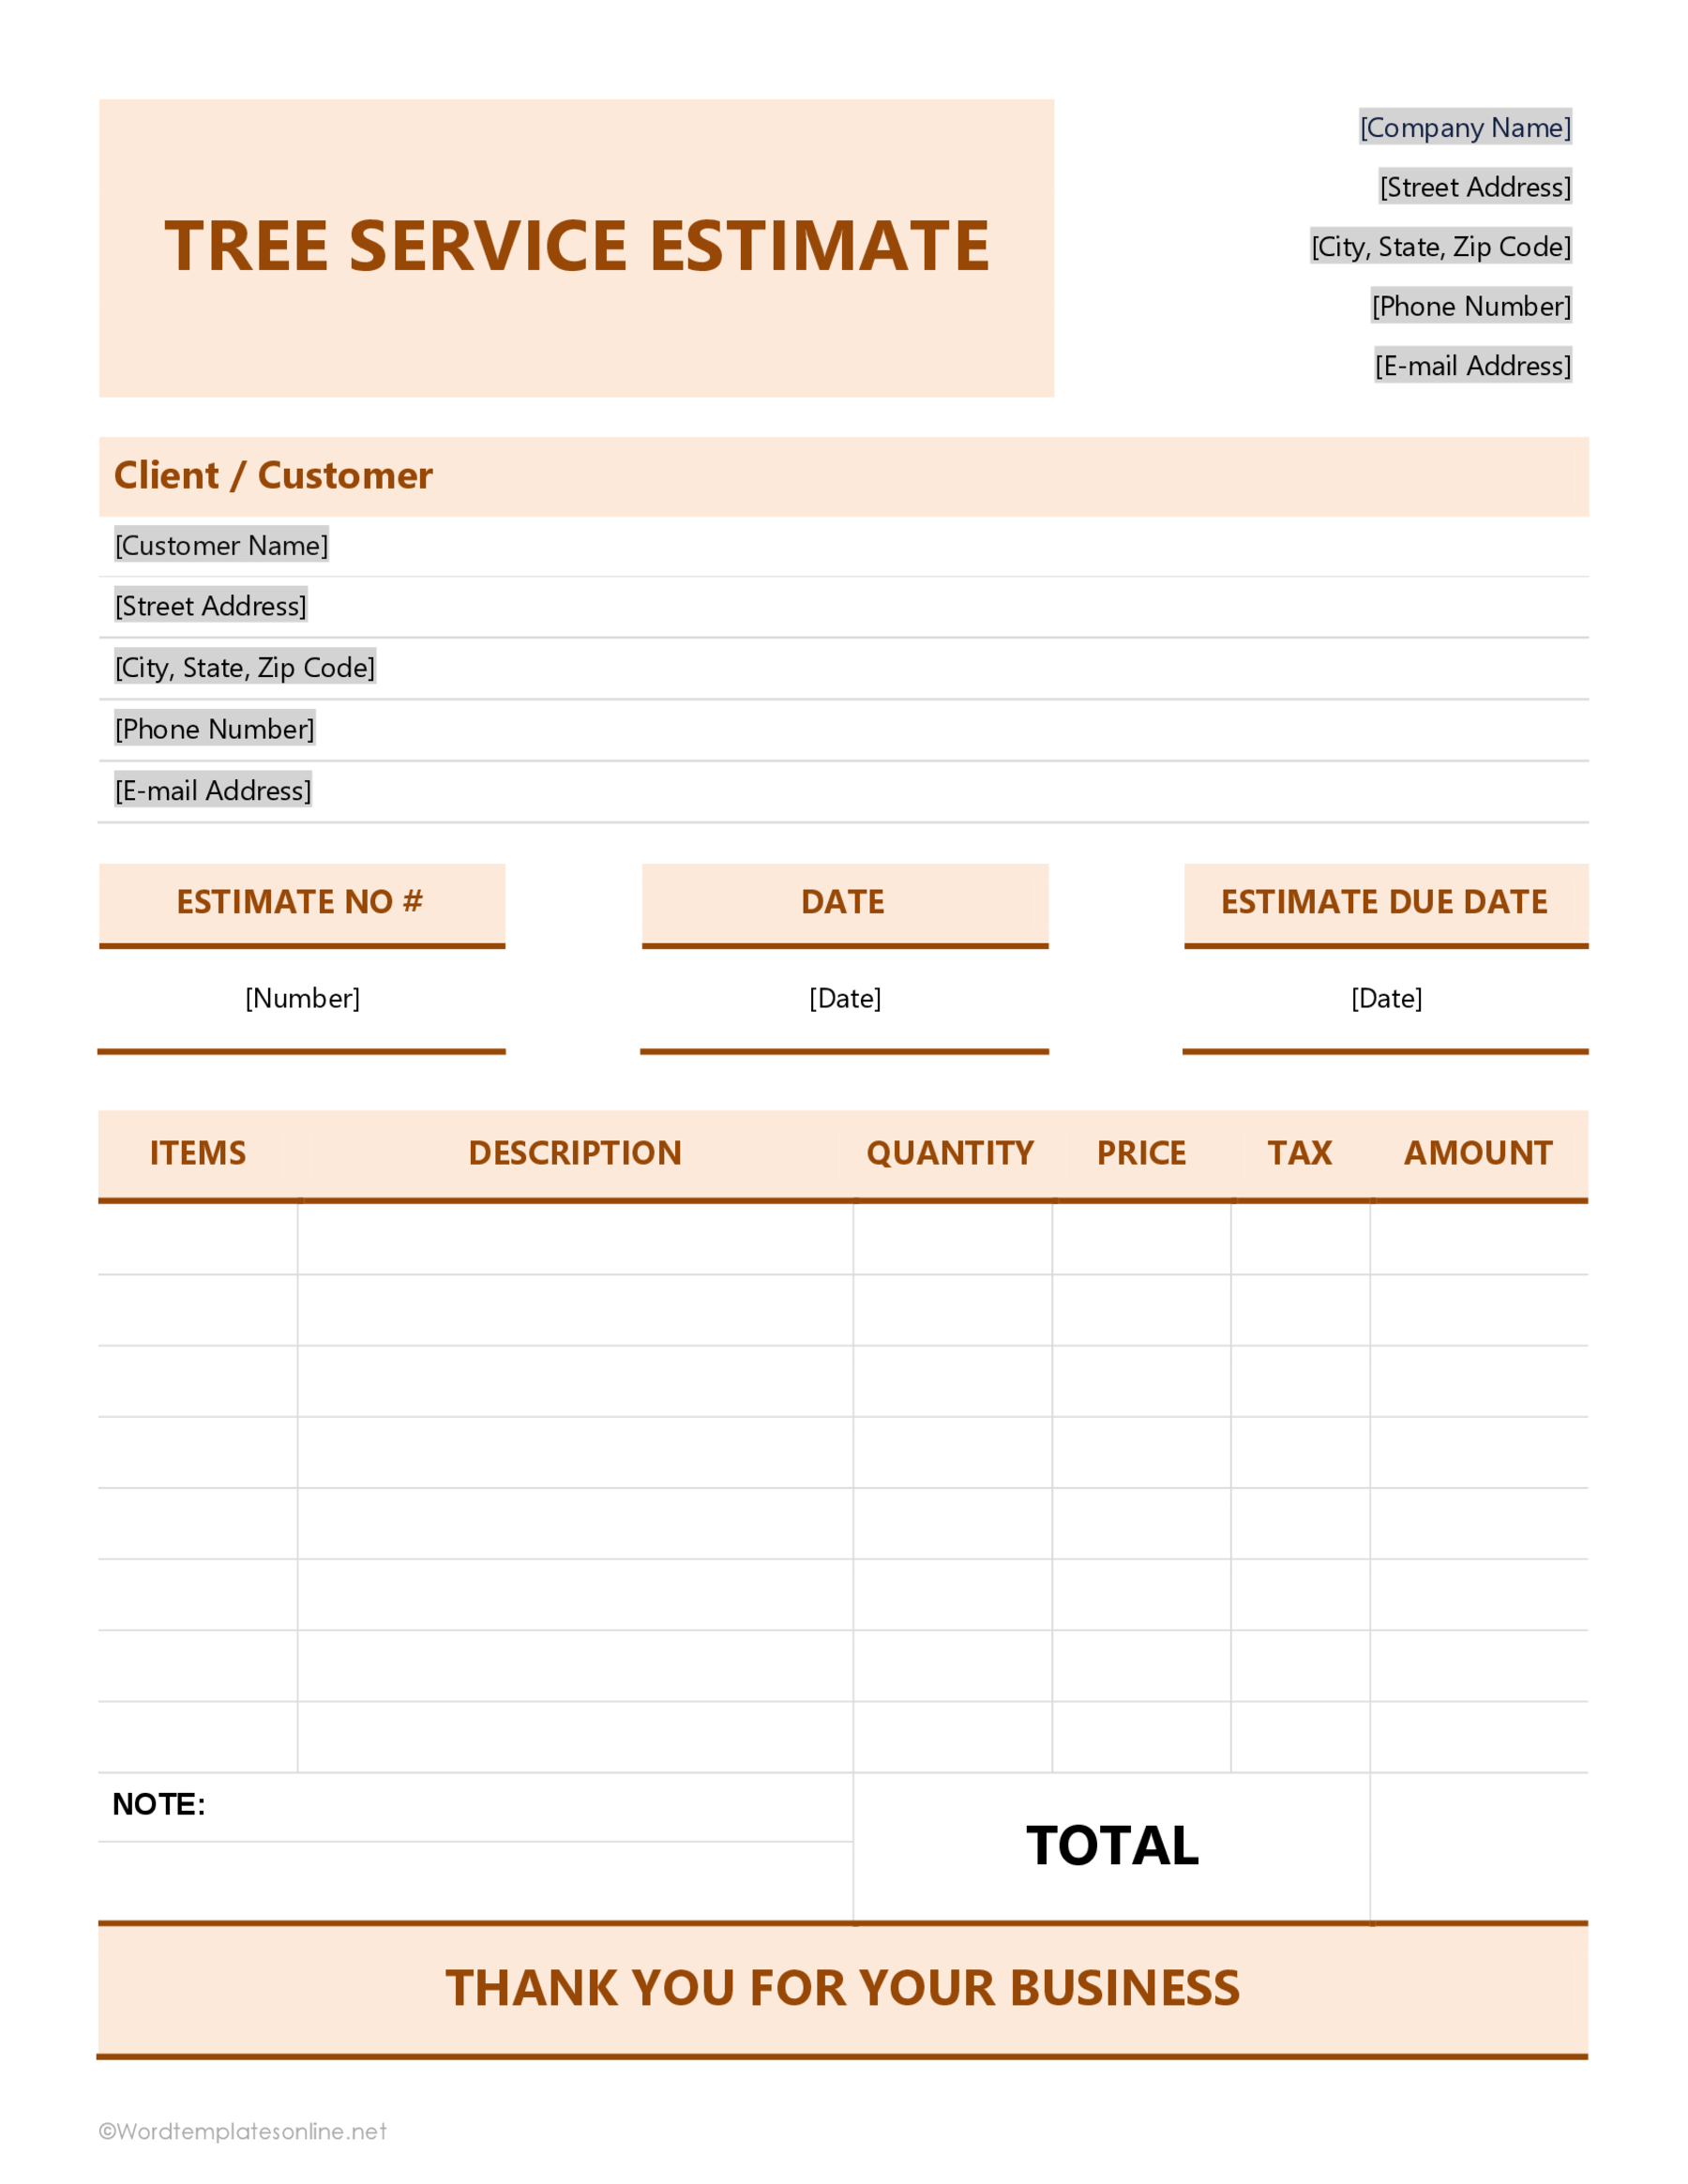 Sample Tree Service Estimate Format